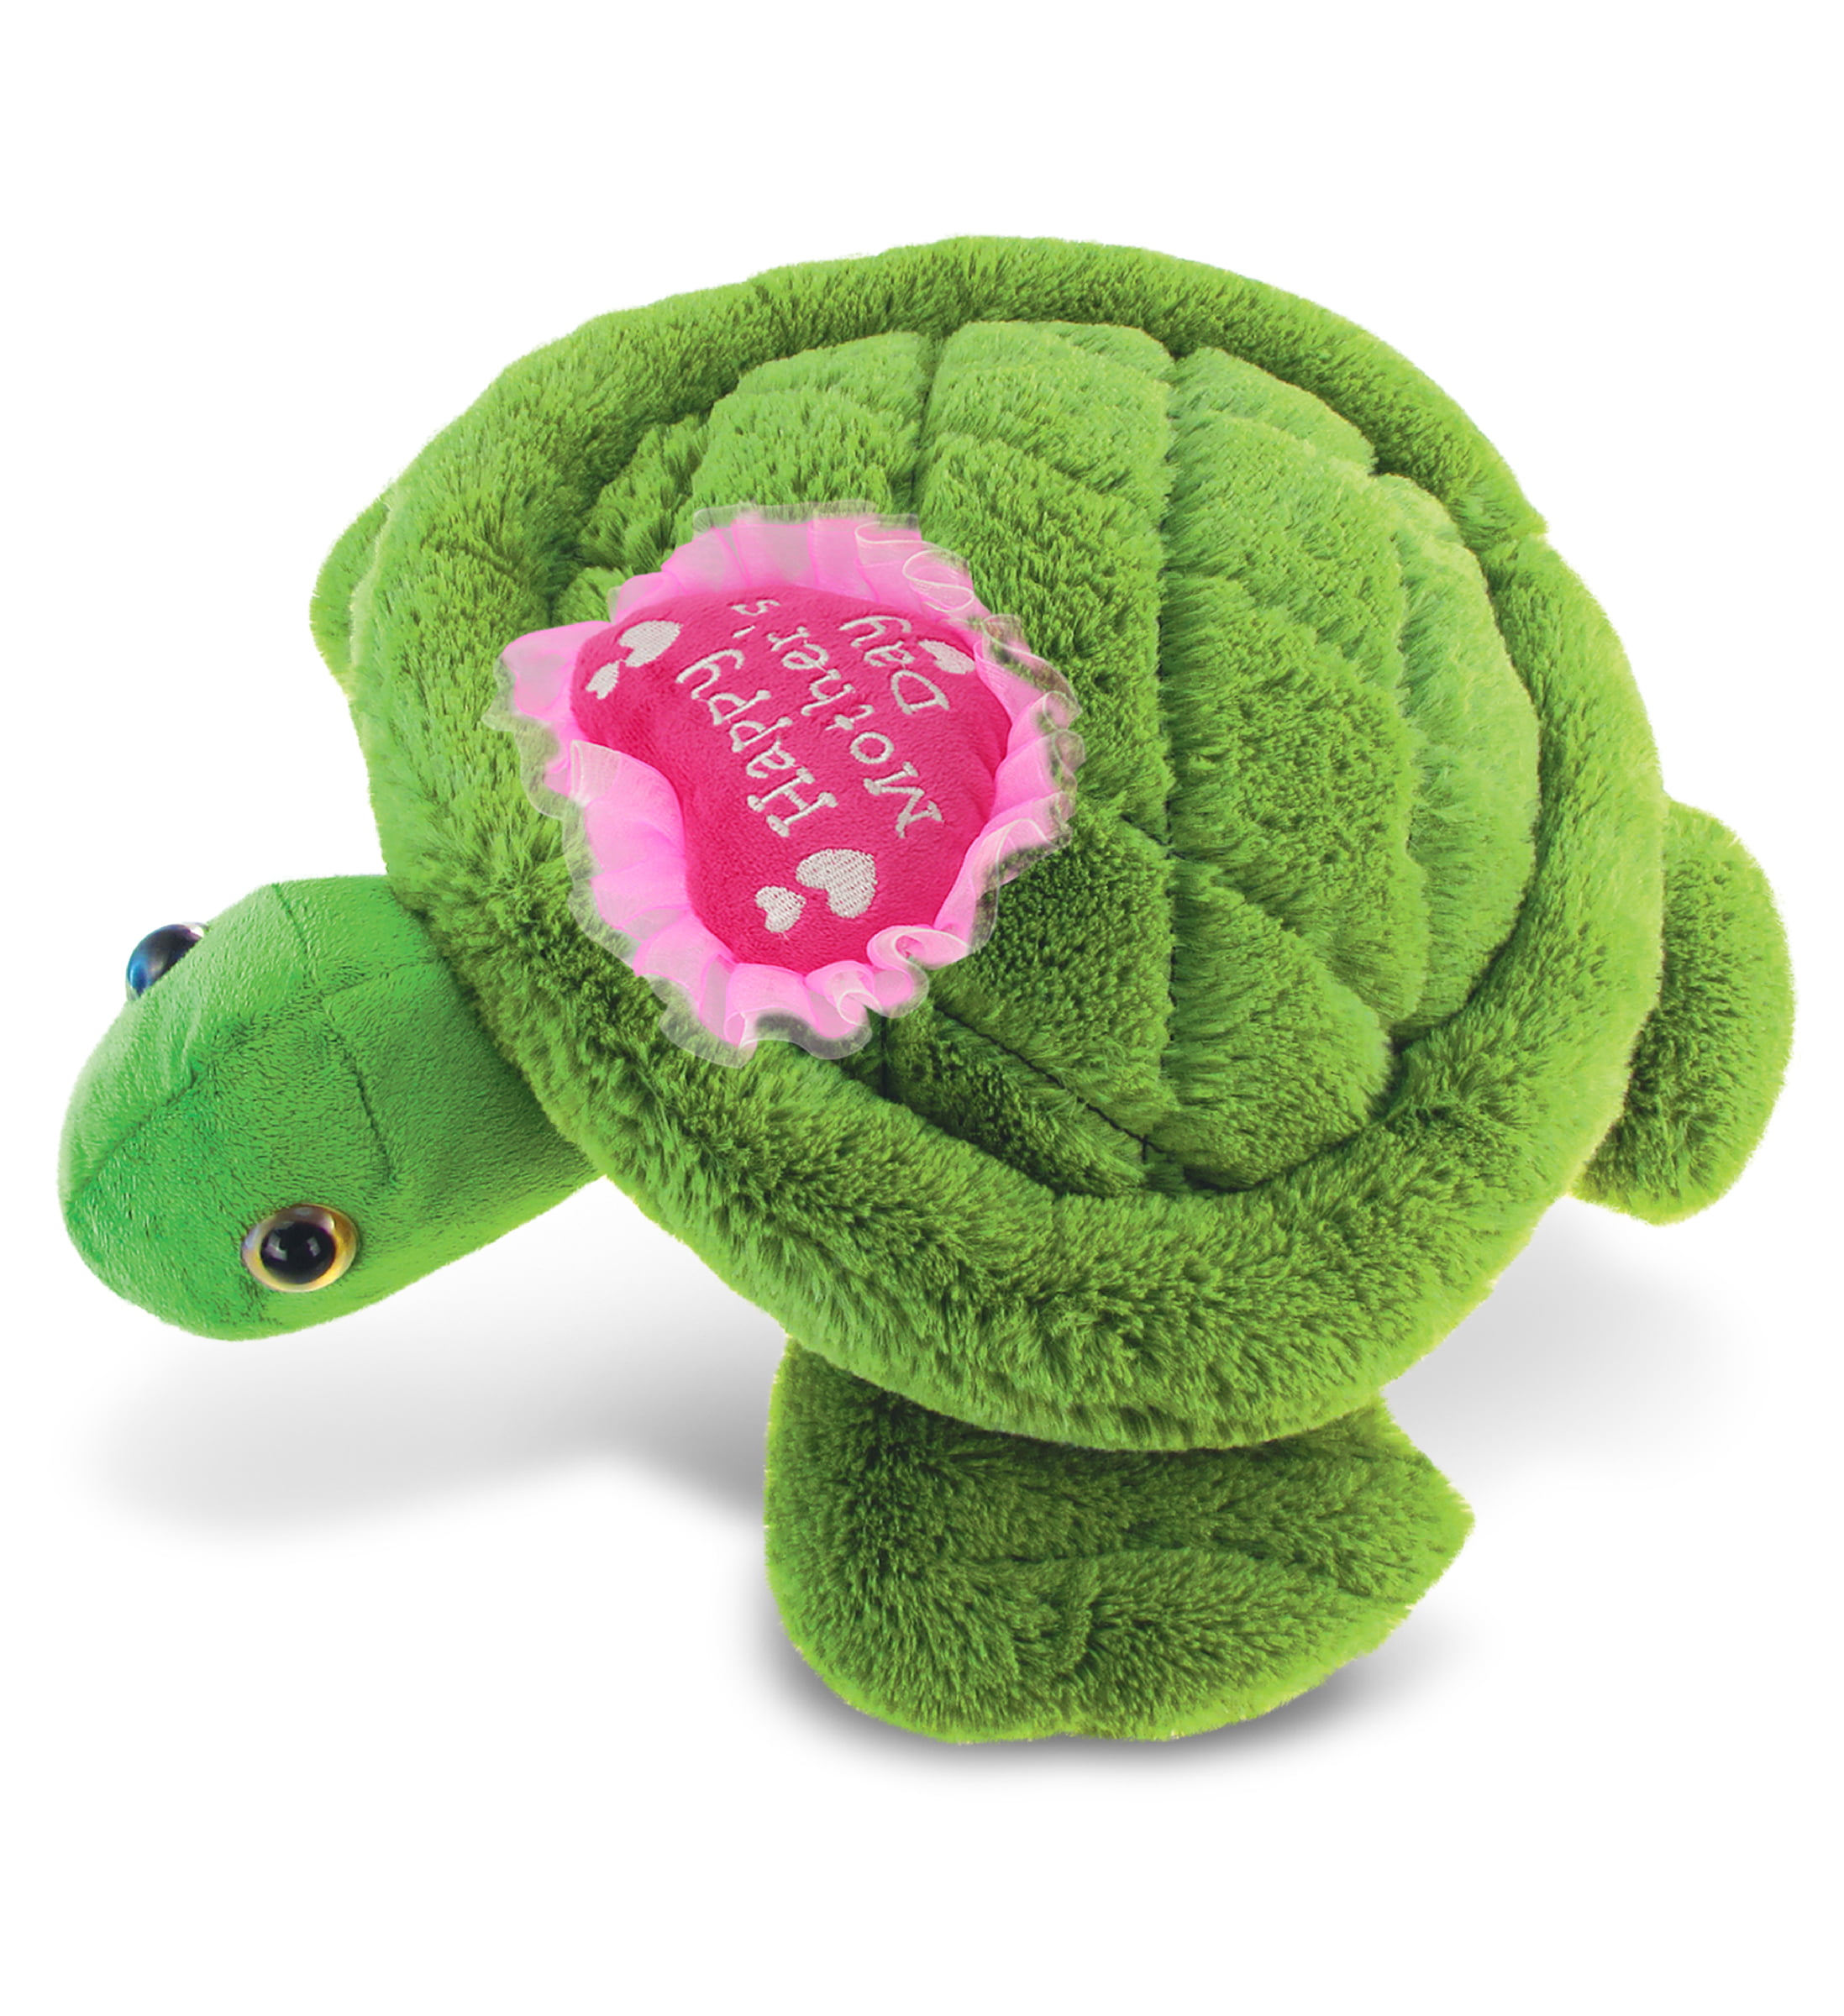 TAGLN Lifelike Kids Stuffed Animals Green Sea Turtle Plush Toys 50 CM/20 in 